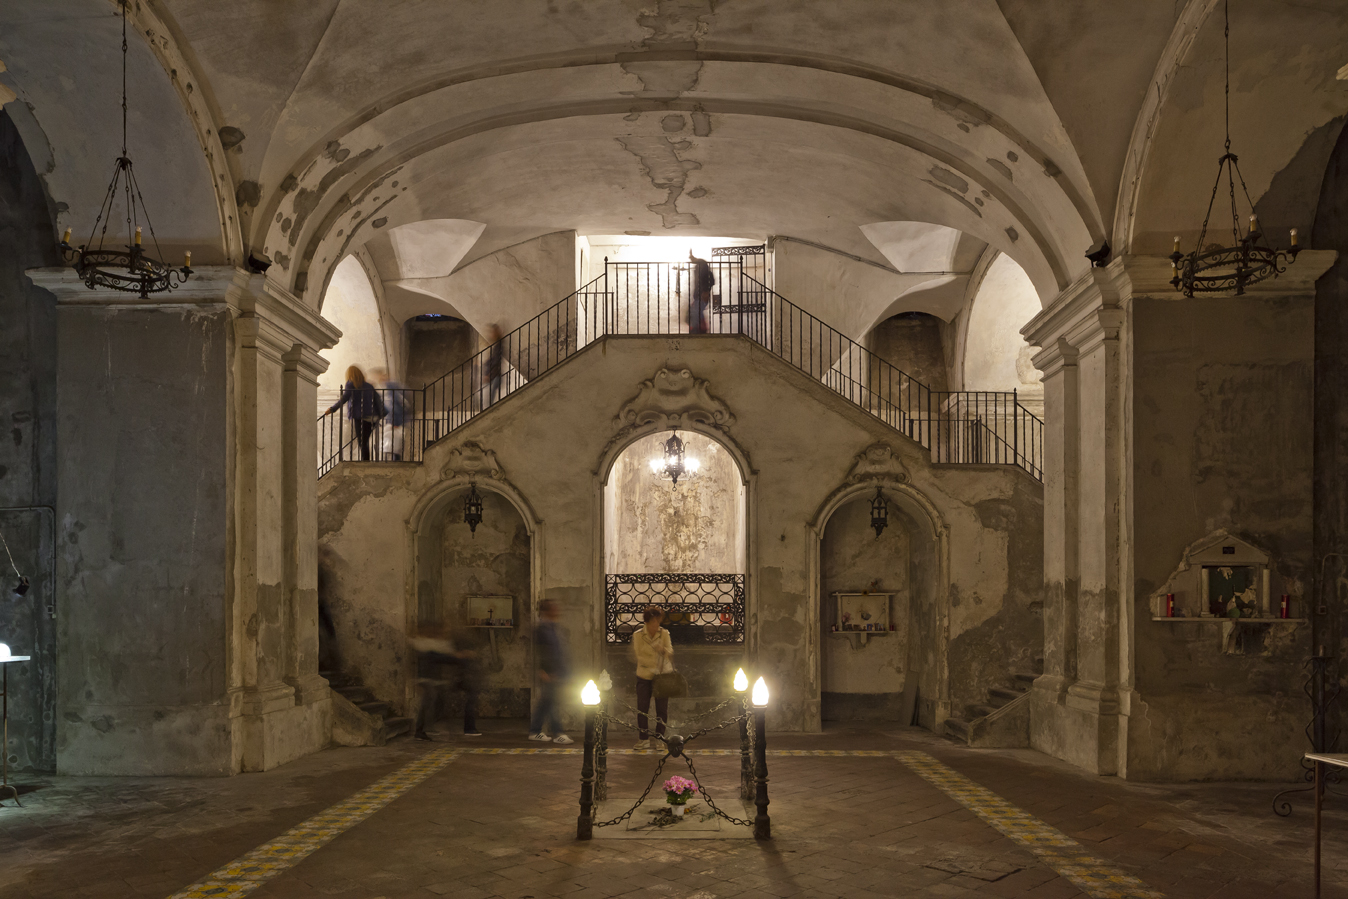 Sabato 16 dicembre, Complesso del Purgatorio ad Arco: visite guidate ogni 30 minuti a partire dalle 19:30 - Napolitan.it